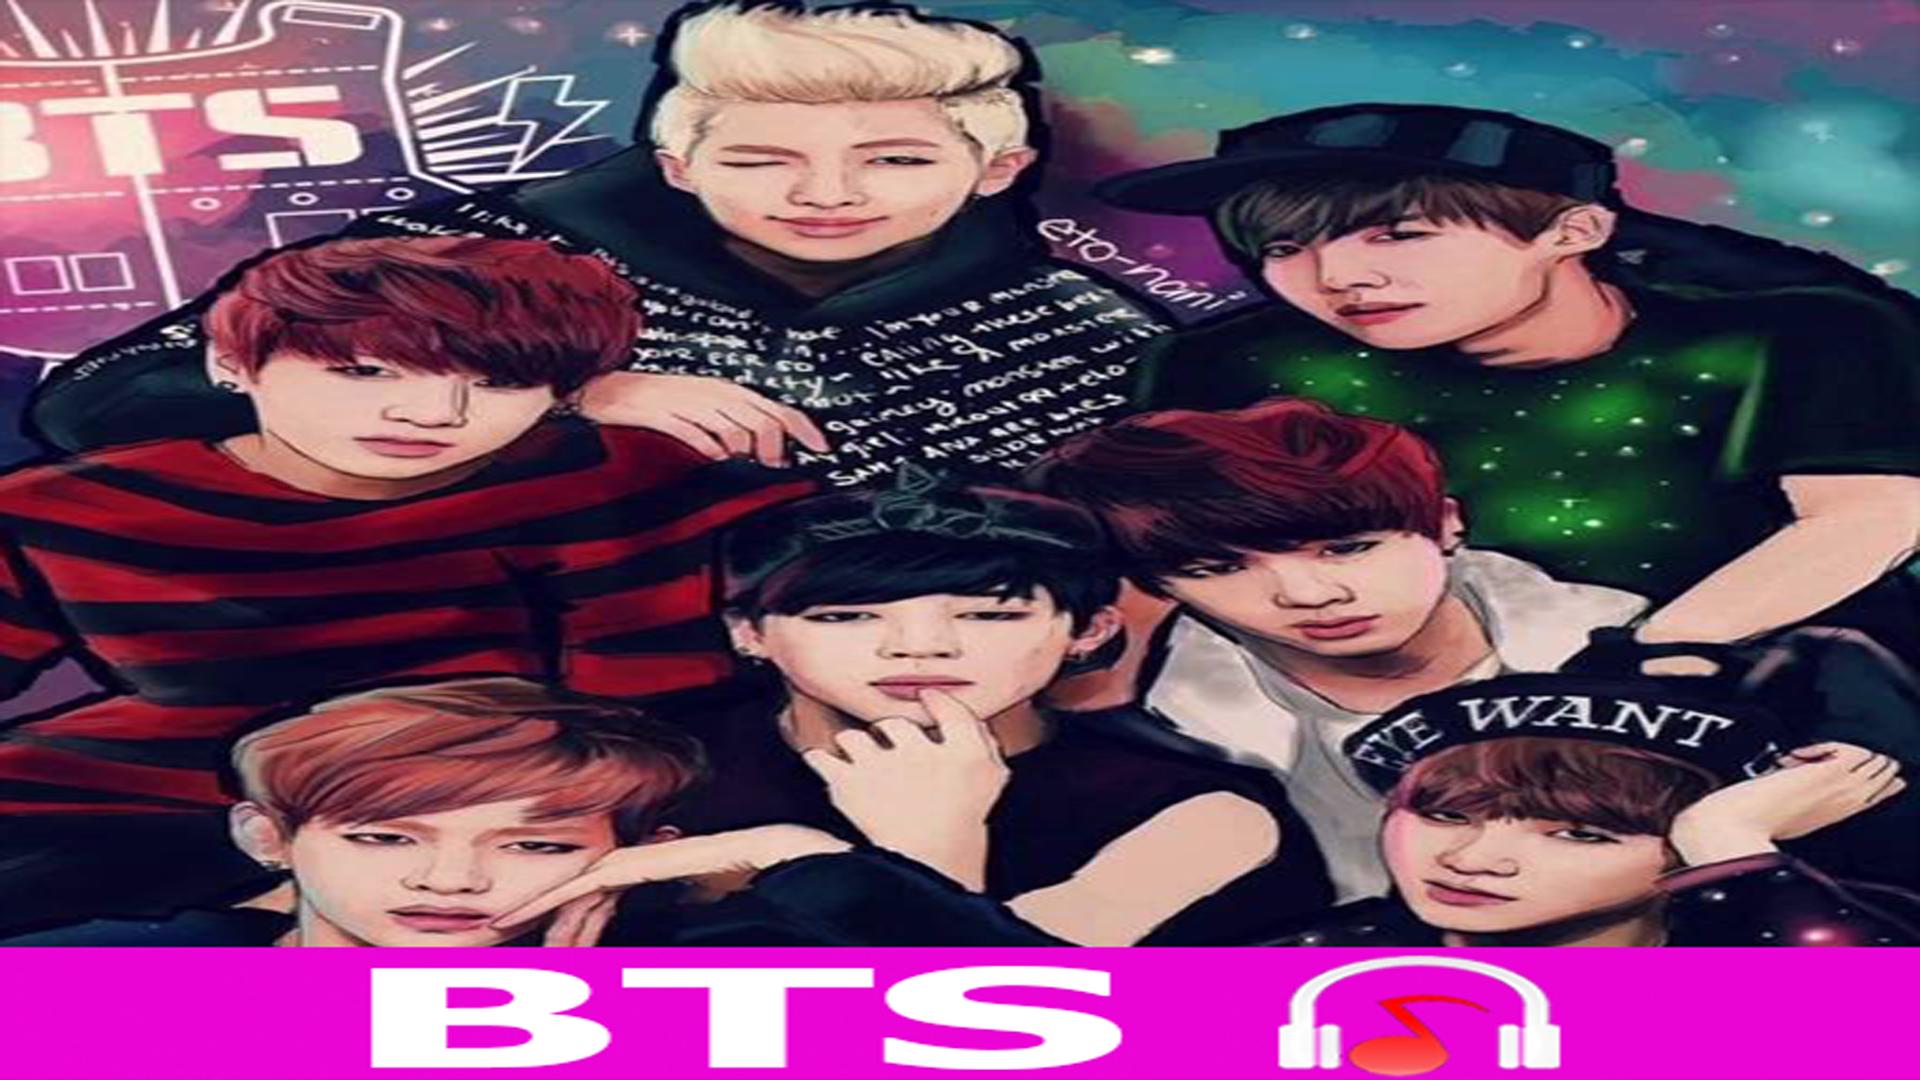 BTS Music - All BTS Songs Mp3 Android के लिए APK डाउनलोड करें